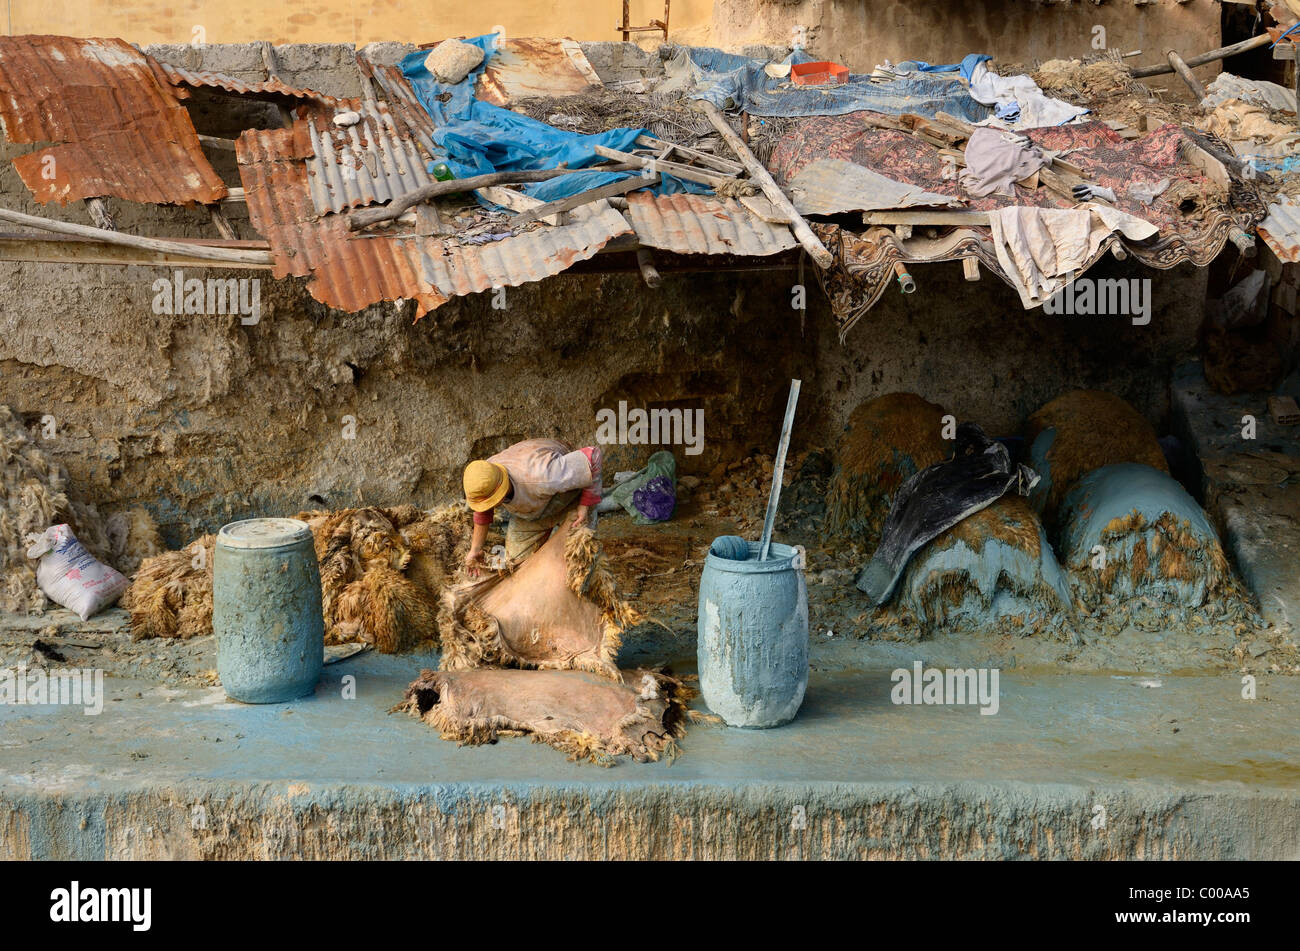 Fes tannerie travailleur en application de peinture toit décrépit cuirs avec chrome bleu toxiques par l'Oued Fes Fez Maroc Chouara rivière trimestre l'Afrique du Nord Banque D'Images